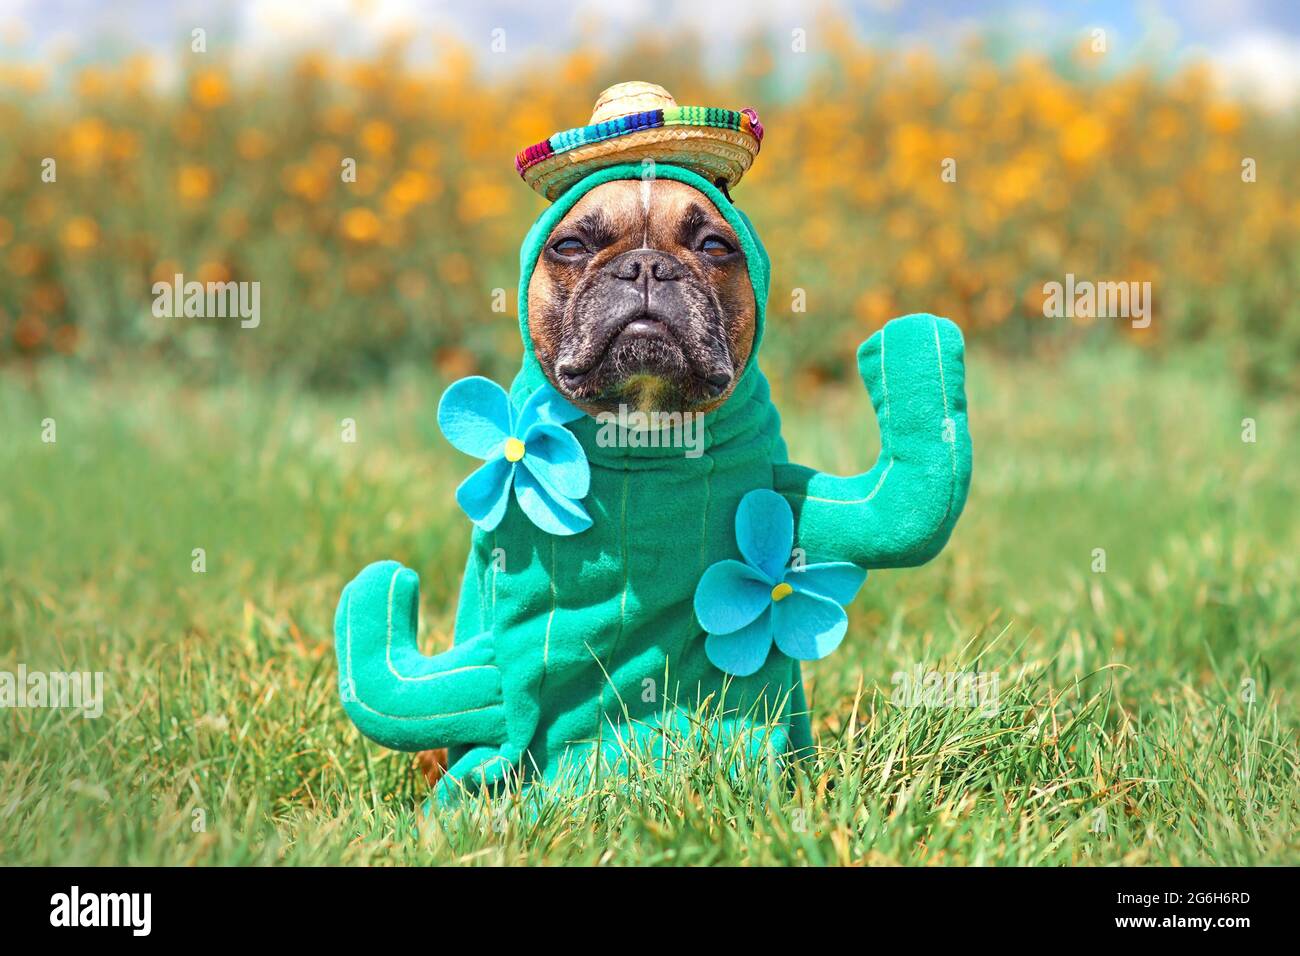 Witziges Hundekostüm. Französische Bulldogge verkleidet mit Kakteen Pflanze Halloween Kostüm mit gefälschten Armen, Blume und Strohhut Stockfoto